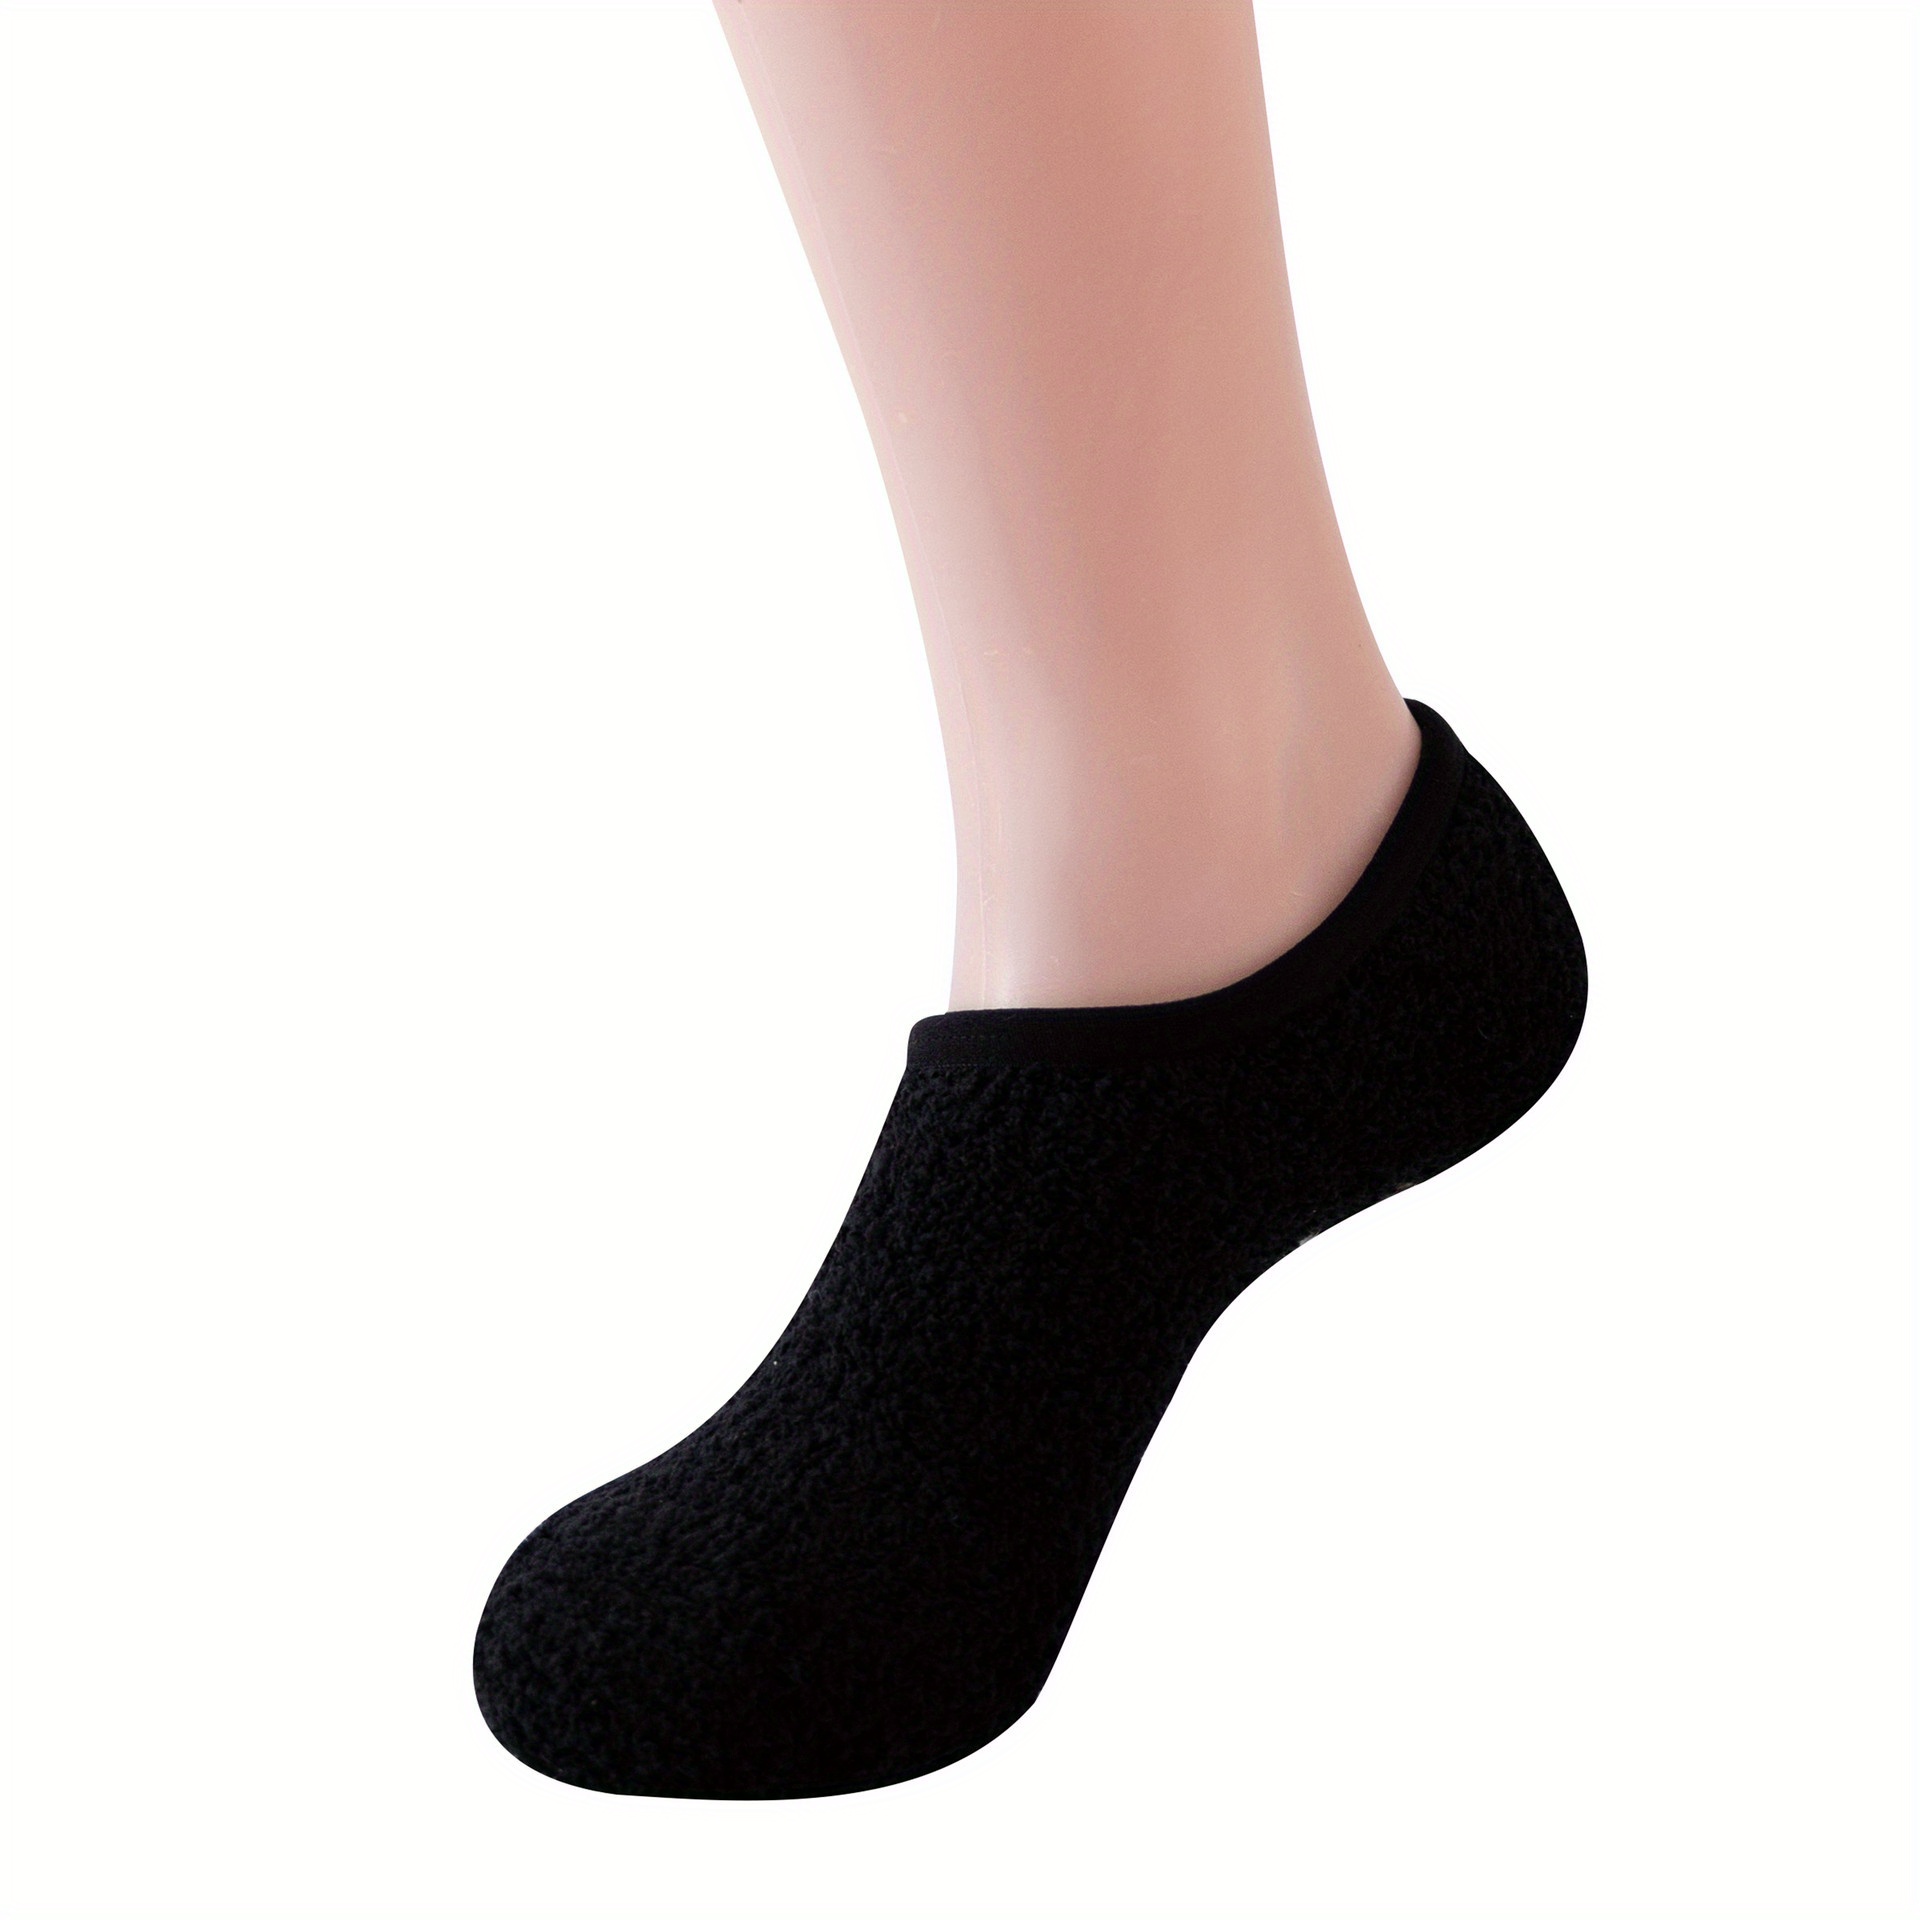 asdas Slipper Socks For Women With Grippers Non Slip,Fuzzy Socks